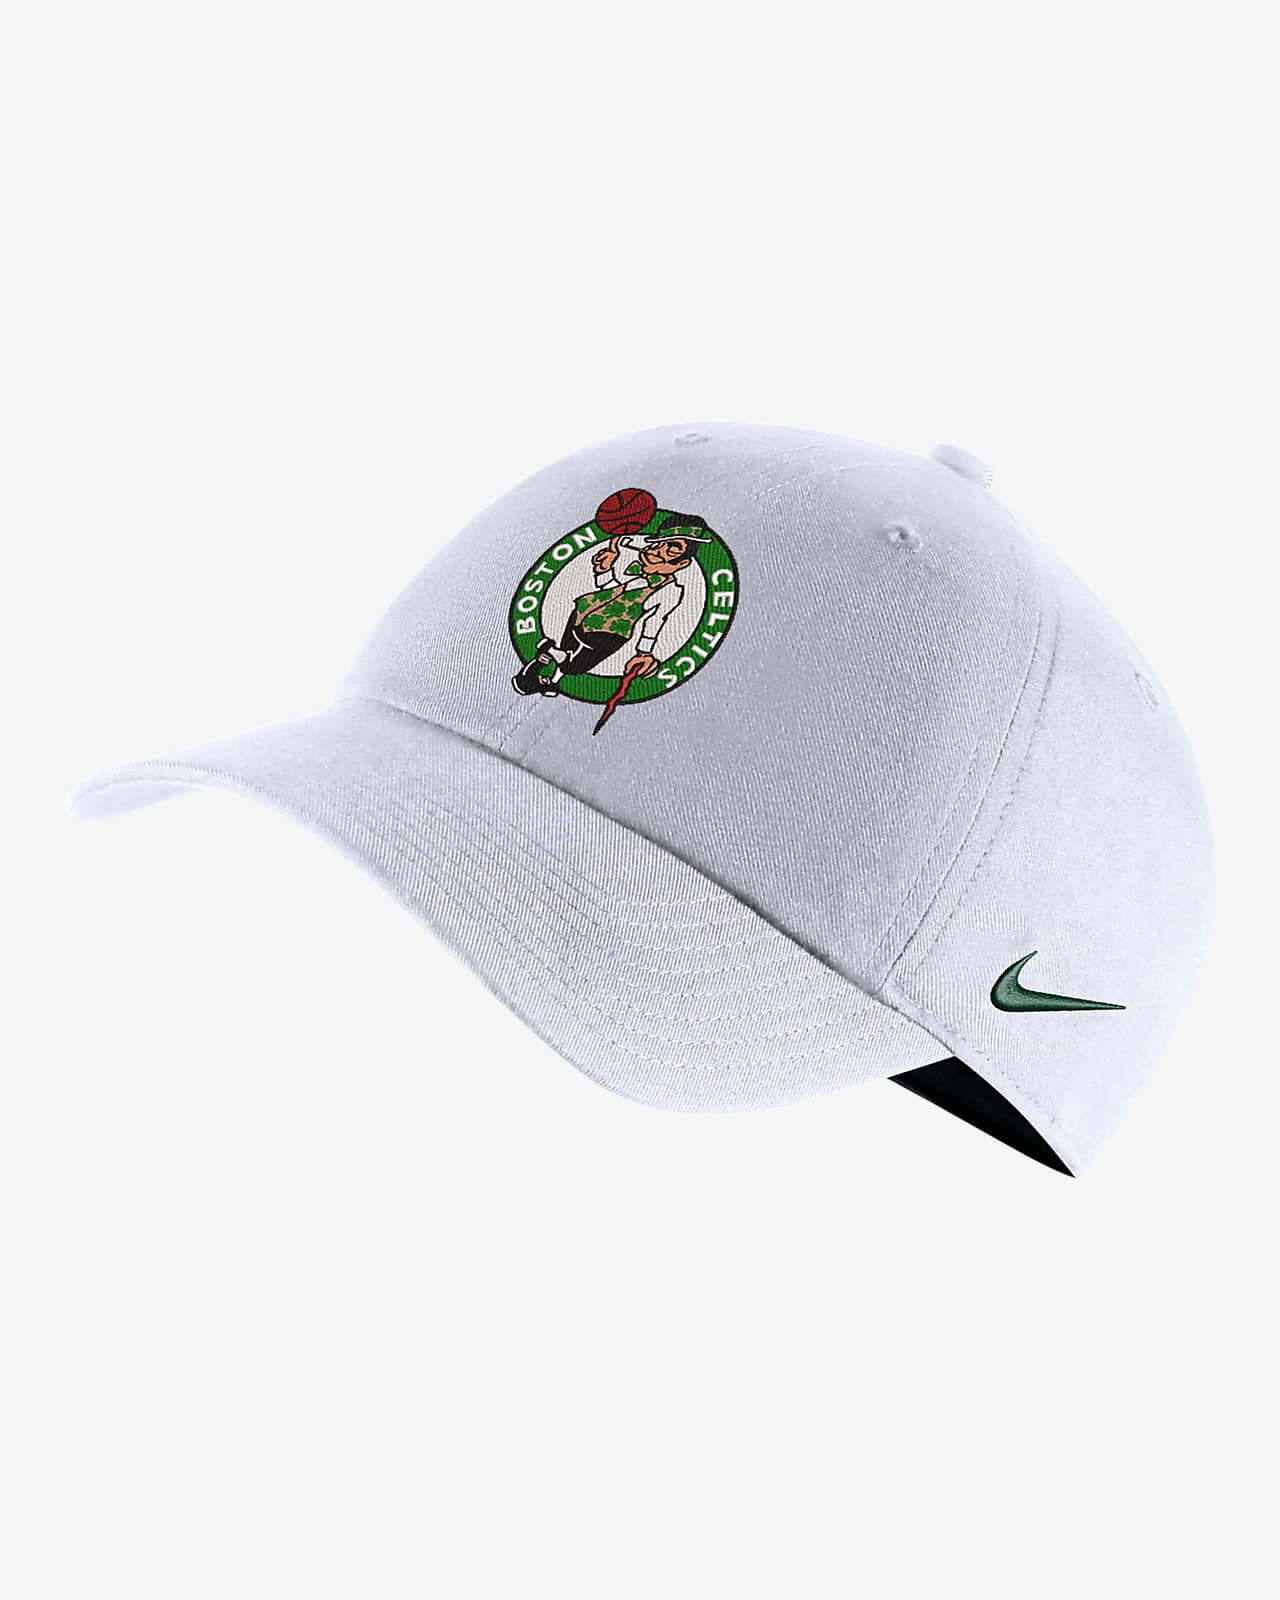 Gorra Nike de la NBA ajustable Boston Celtics City Edition